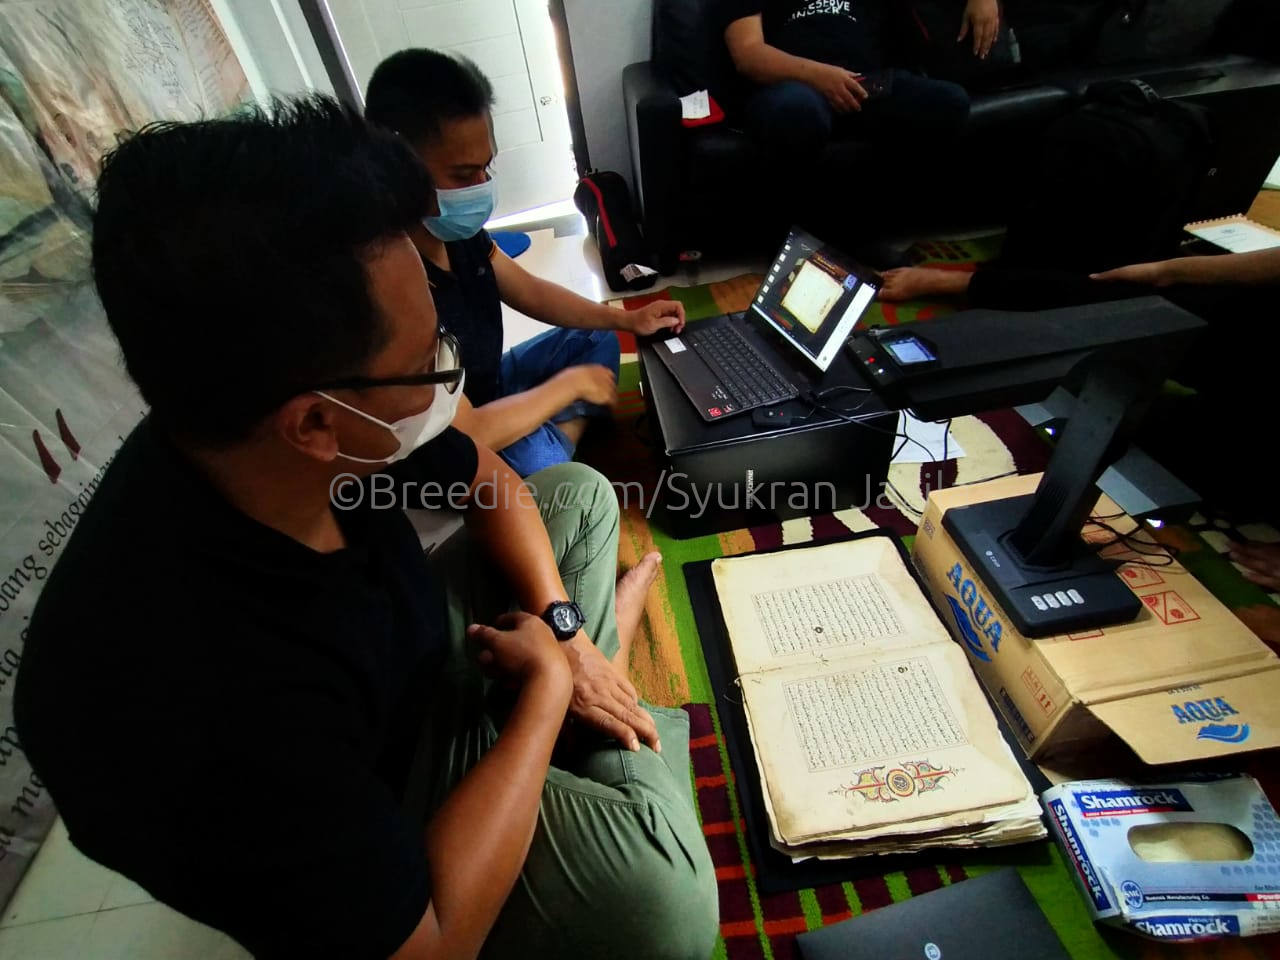 Proses pelestarian manuskrip kuno Aceh. (©Breedie.com/Syukran Jazila)